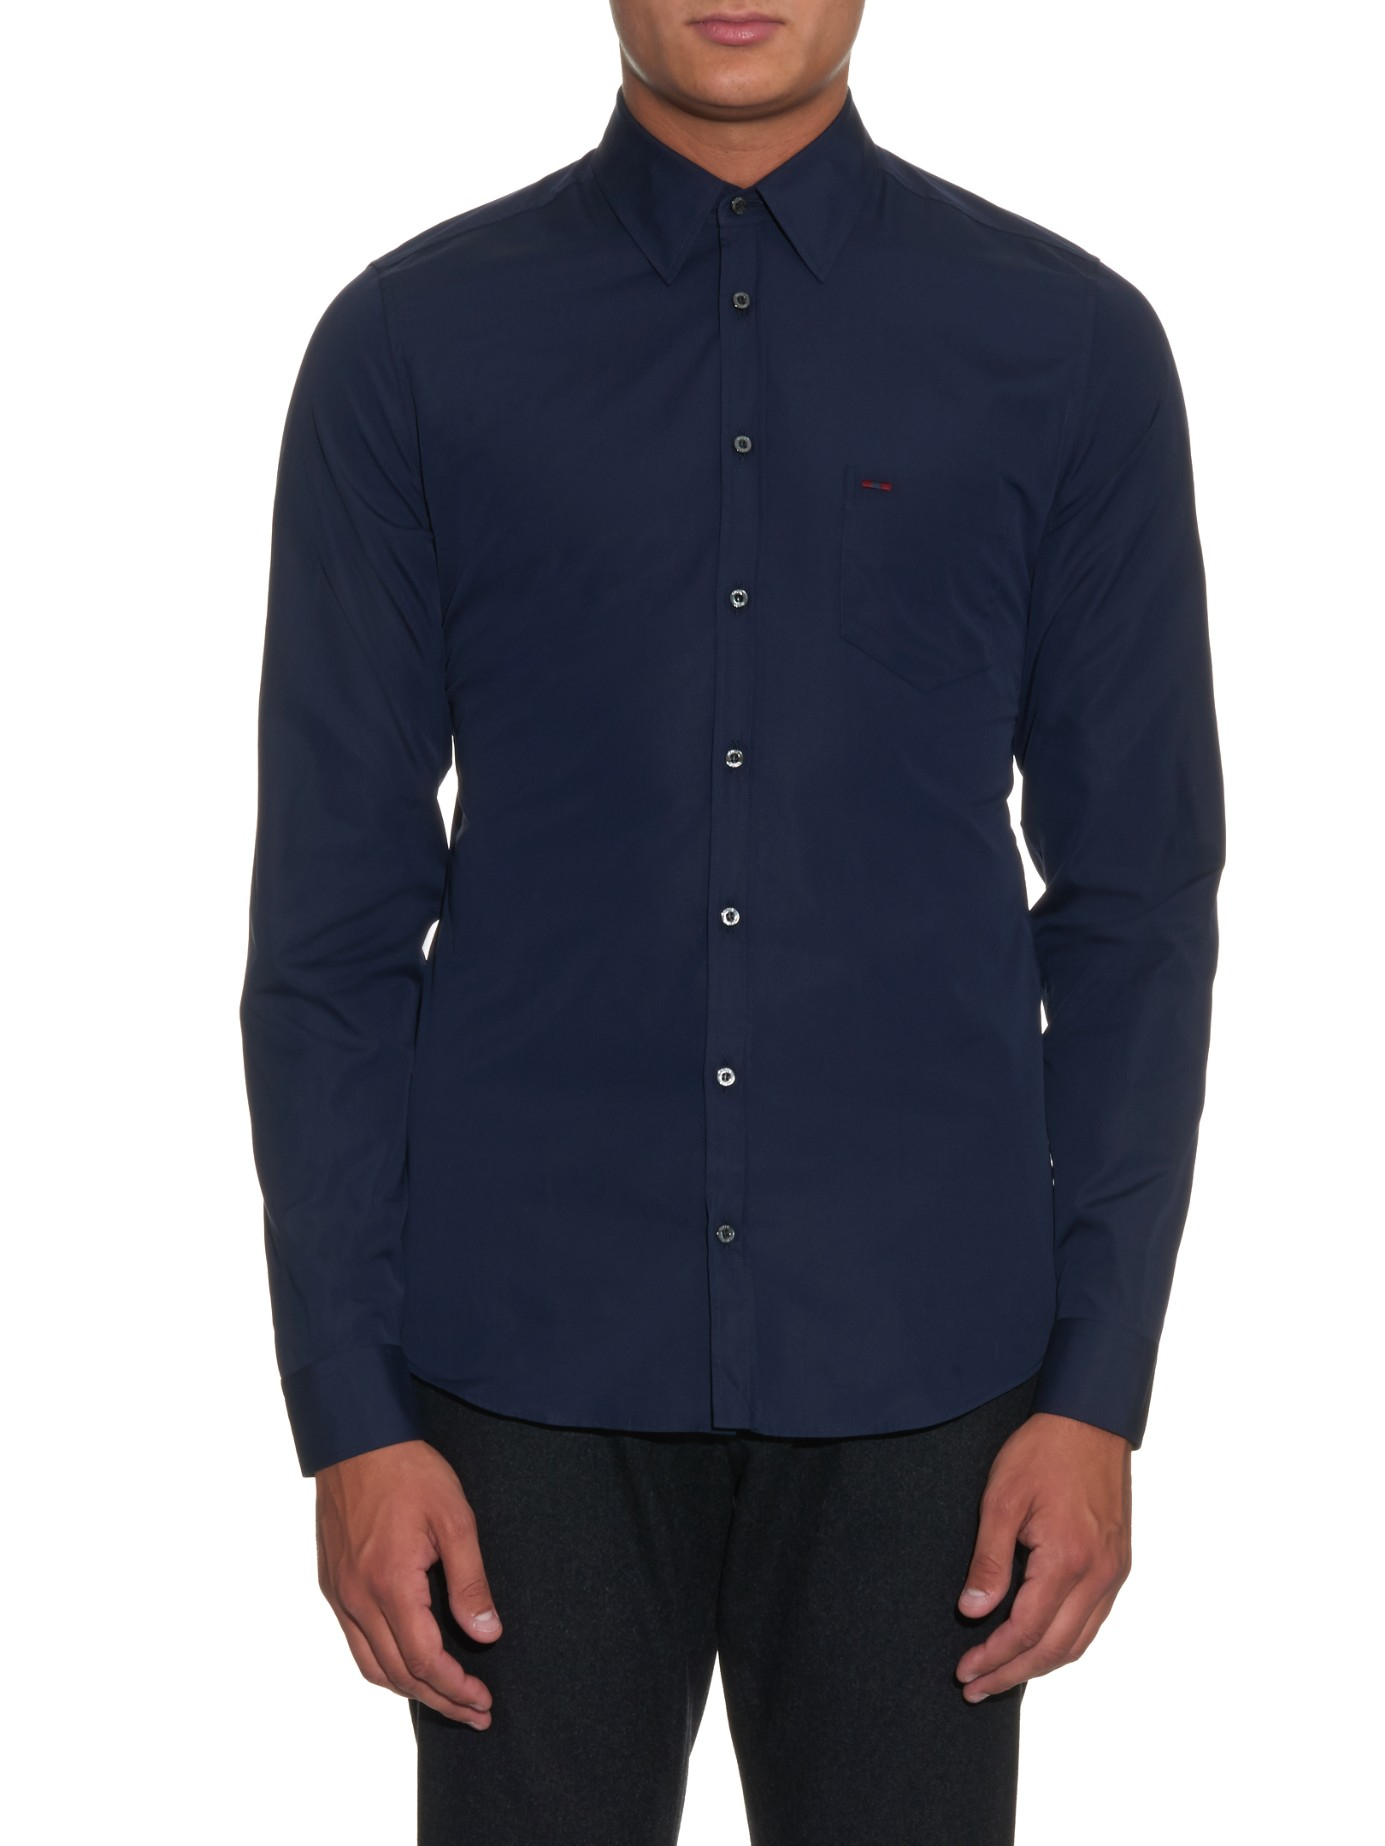 dark blue gucci shirt, OFF 73%,Buy!